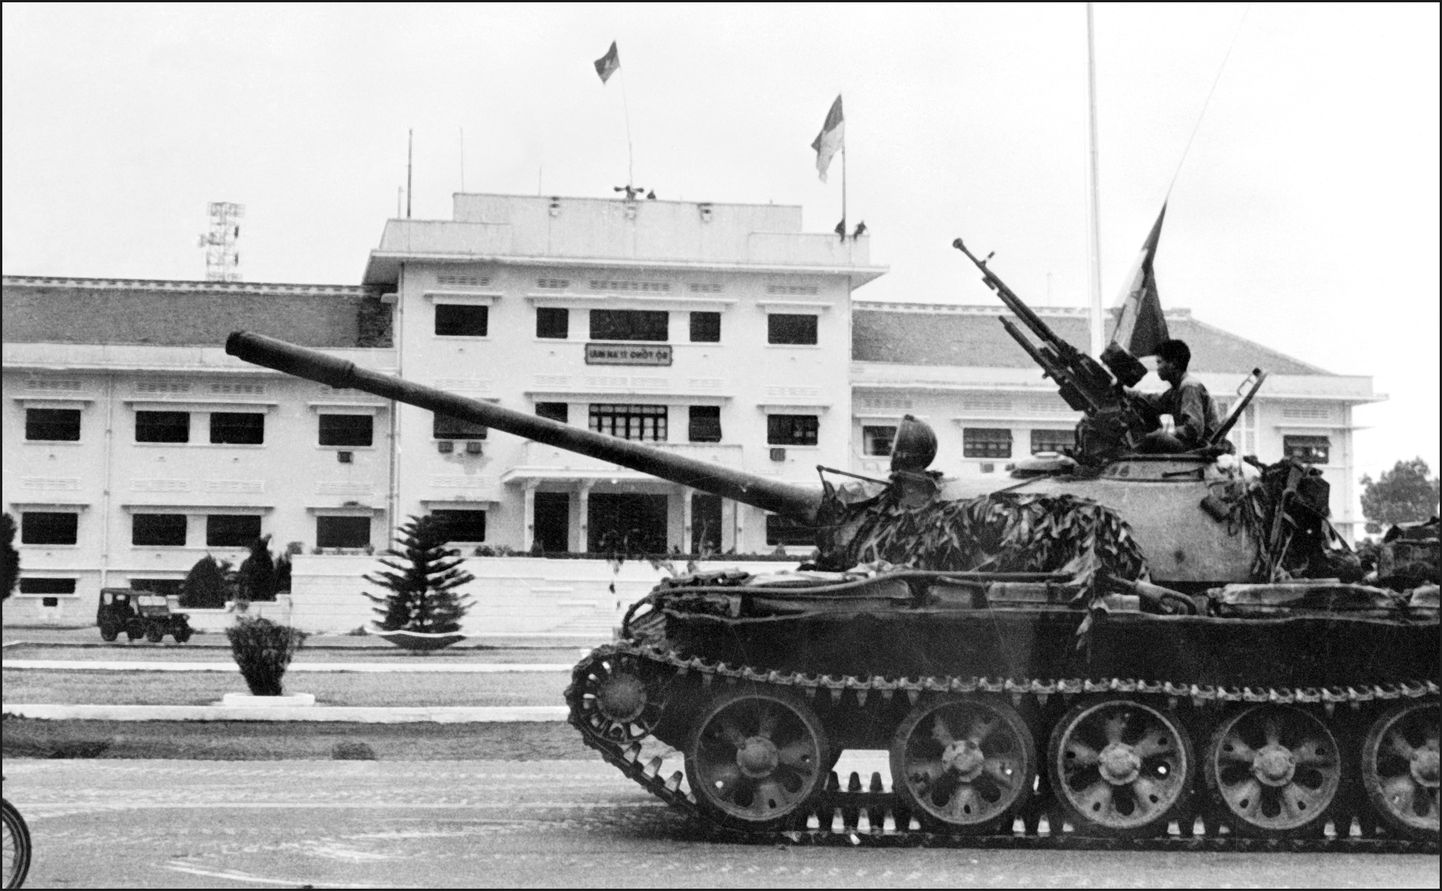 Põhja-Vietnami armee tungib Lõuna-Vietnami presidendipalee juurde 30. aprillil 1975. aastal Saigonis. See oli Lõuna-Vietnami valitsuse viimane tugipunkt.